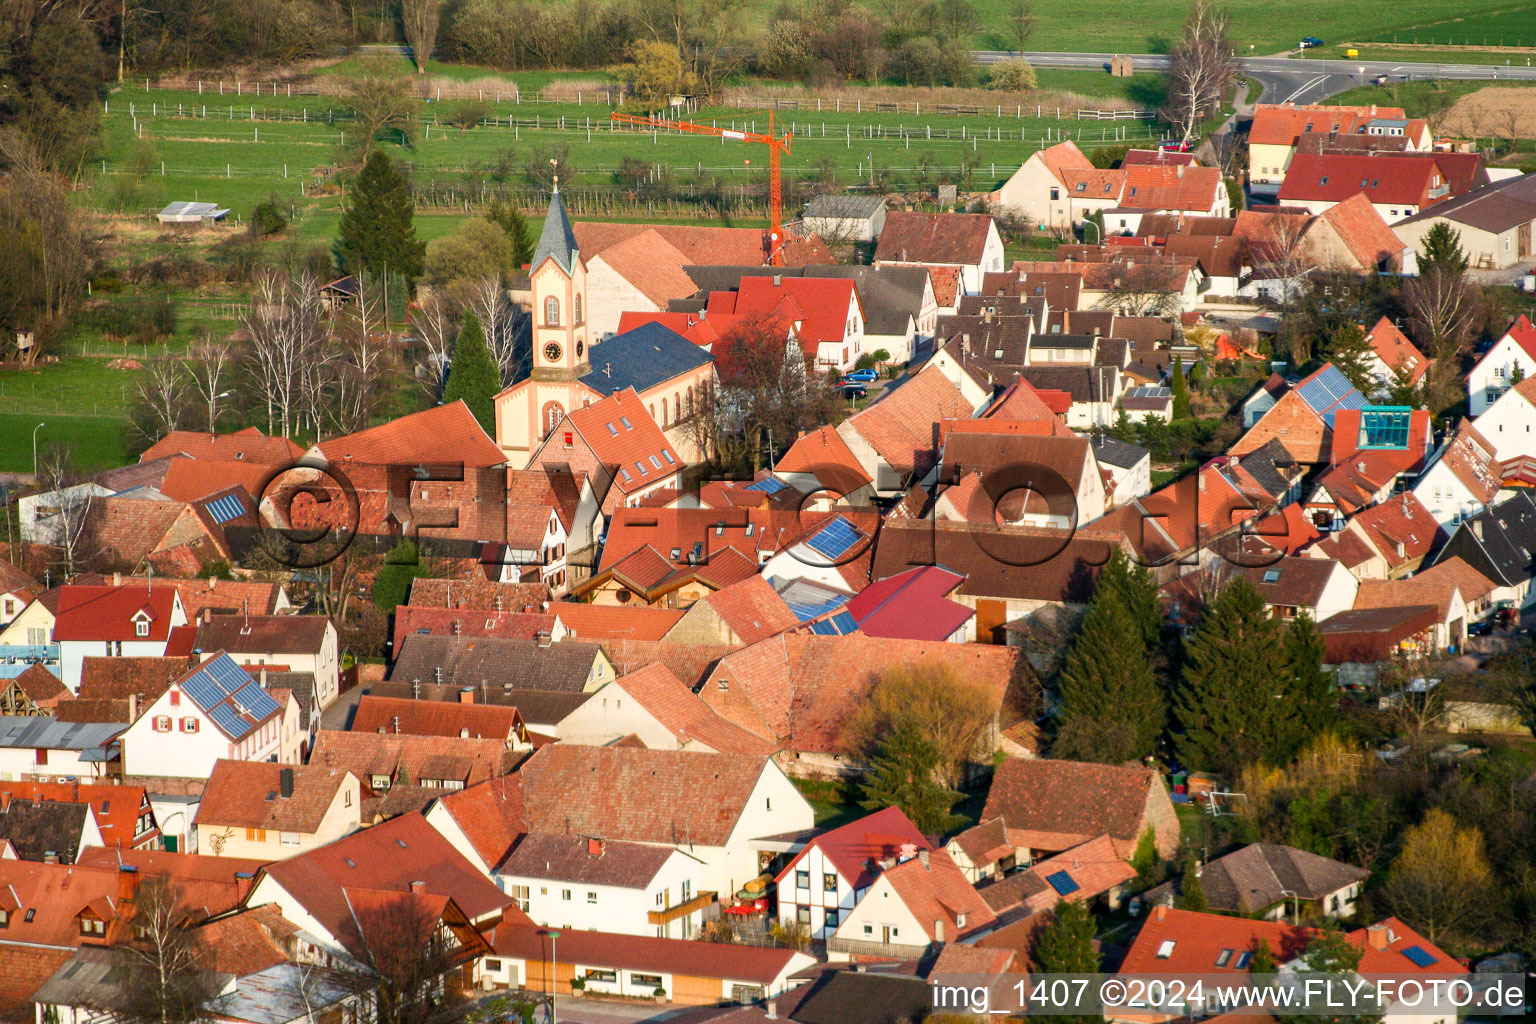 Photographie aérienne de Bâtiment d'église au centre du village à le quartier Ingenheim in Billigheim-Ingenheim dans le département Rhénanie-Palatinat, Allemagne